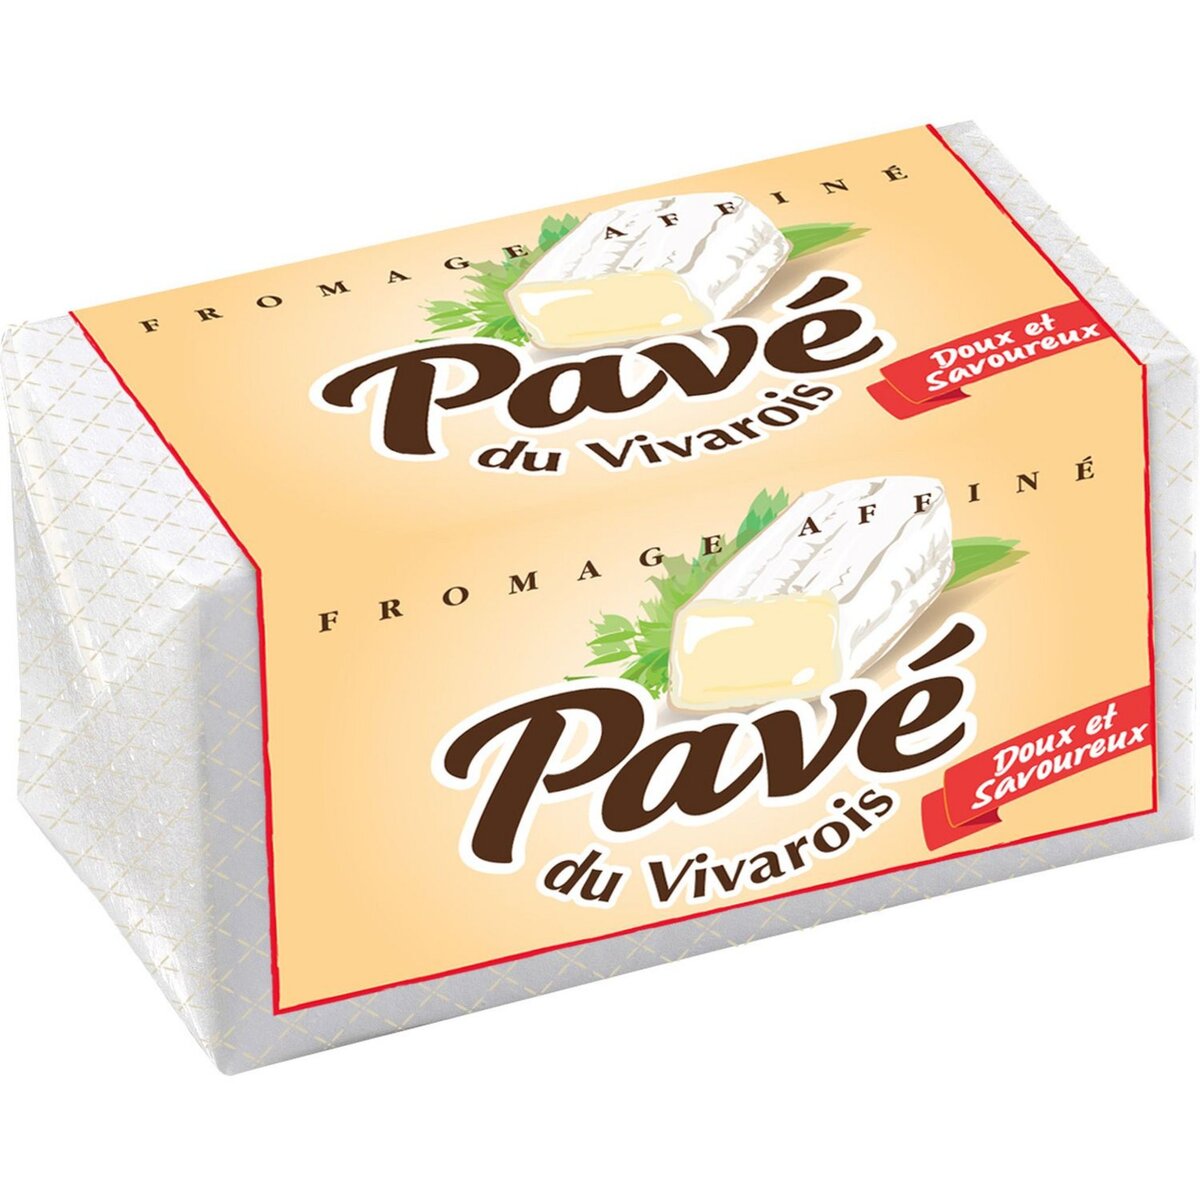 FROMAGE Pavé du Vivarois 200g